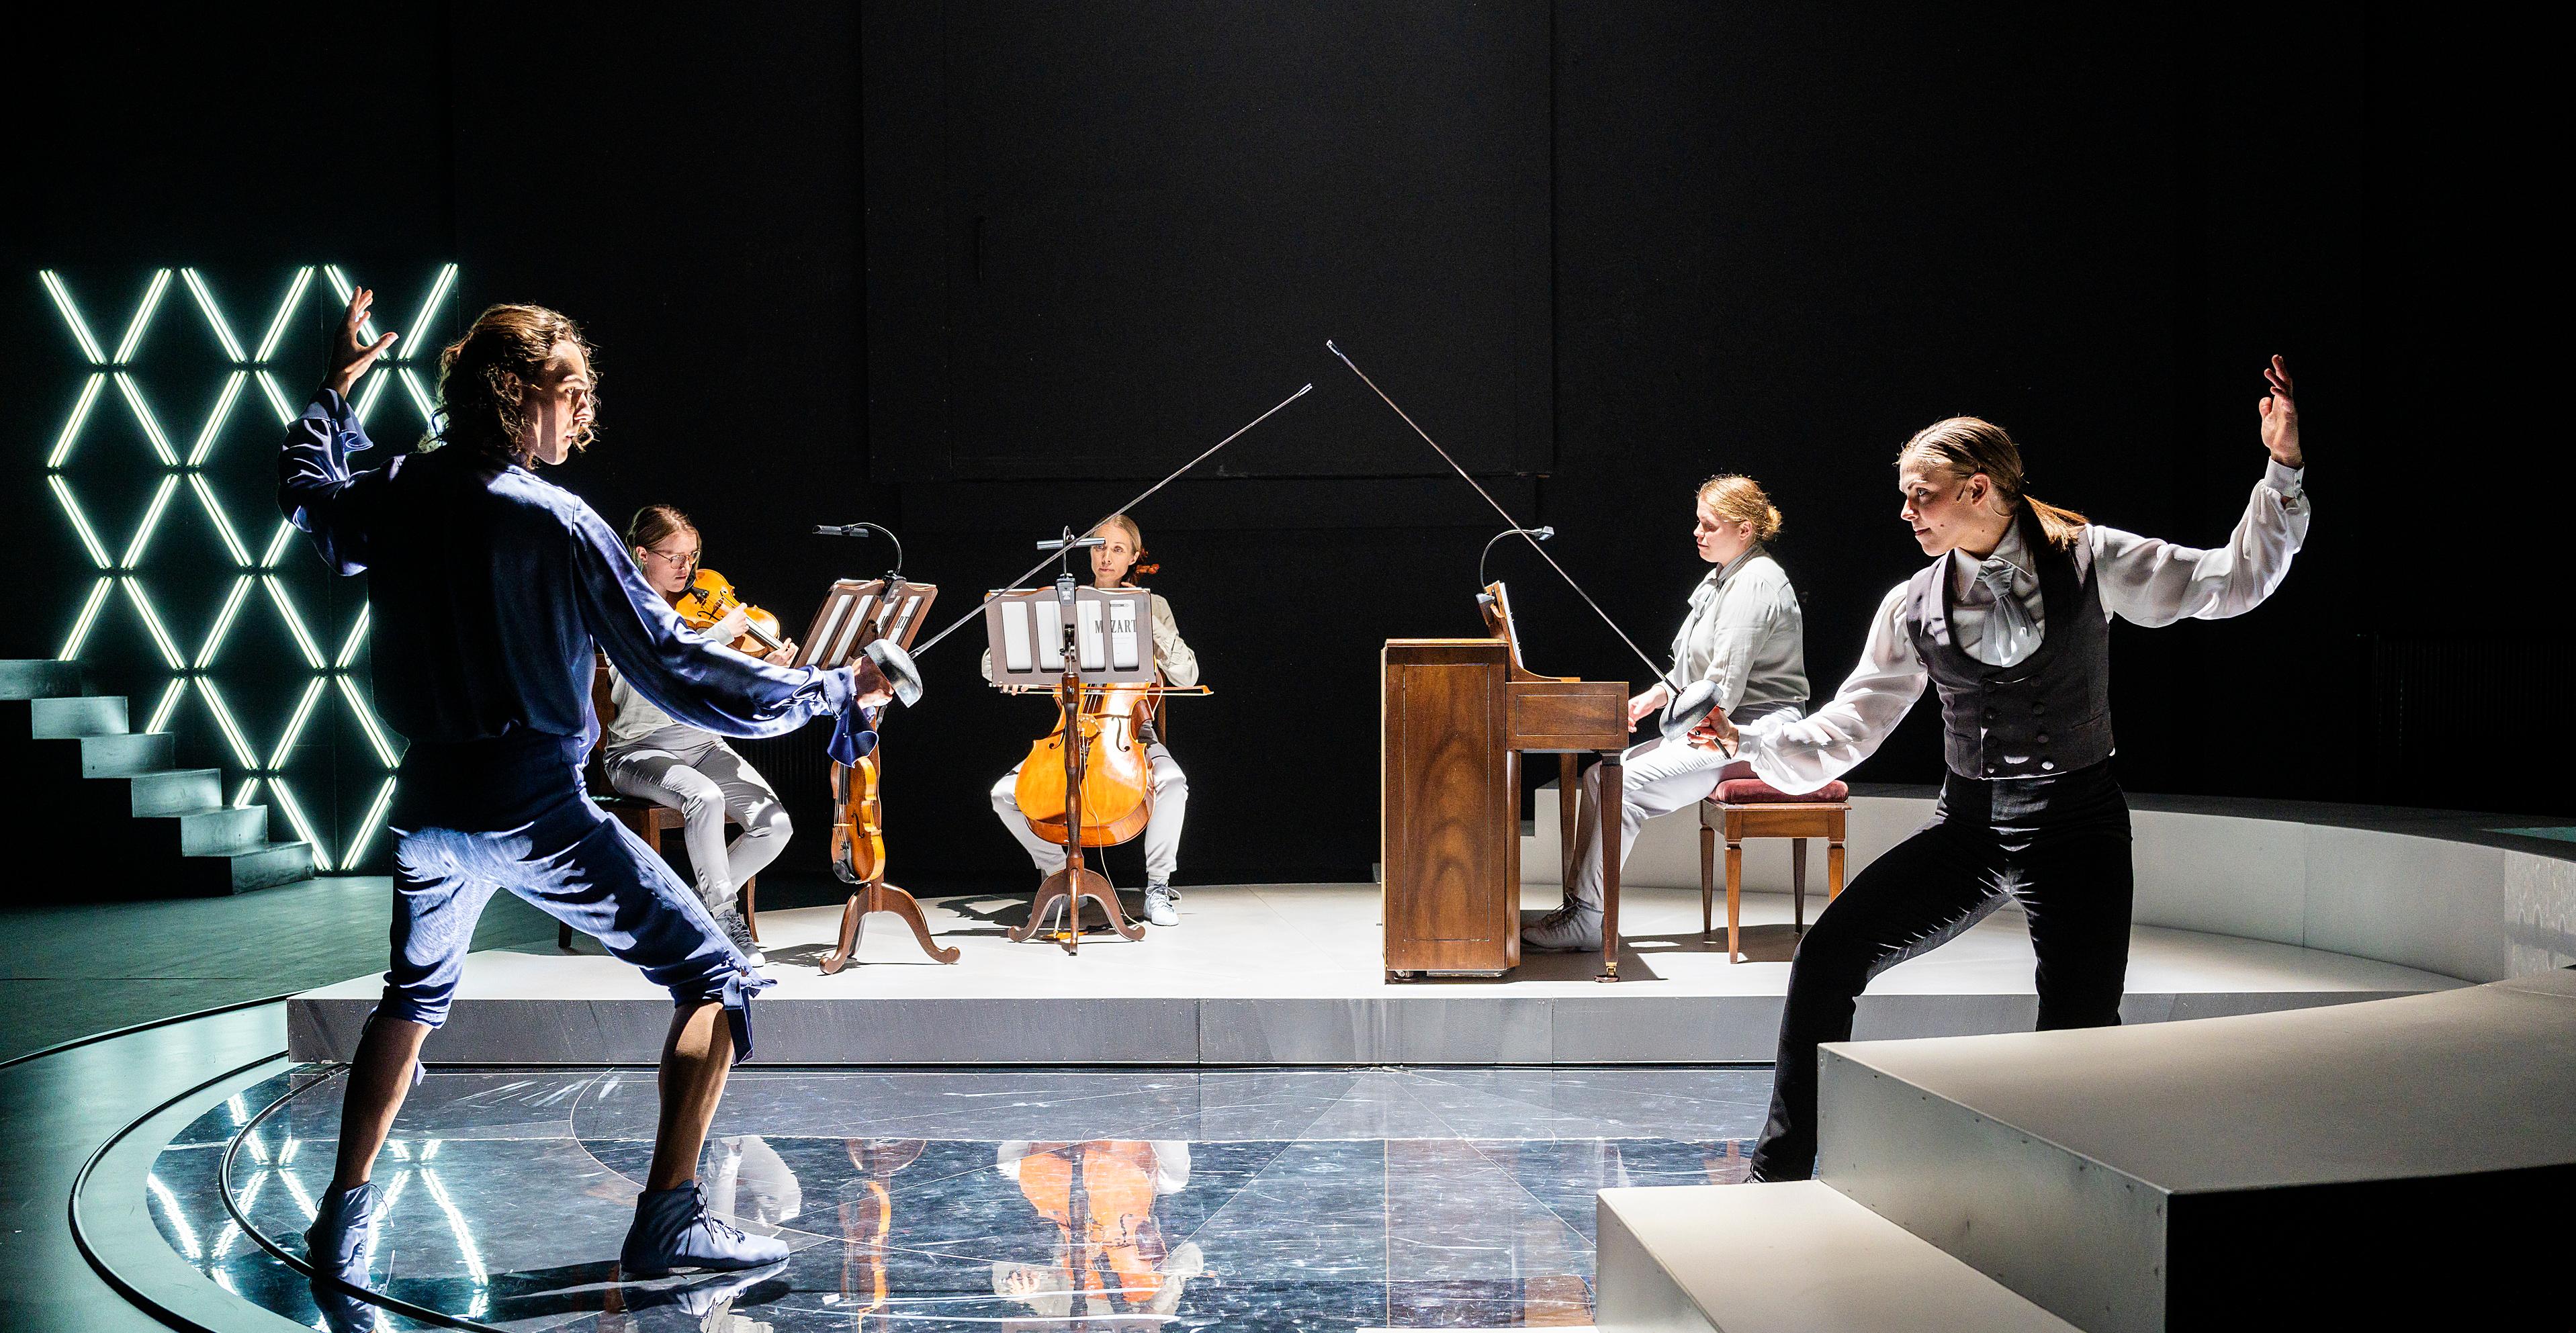 Ett foto. Två personer fäktas med silvriga värjor. De står på en scen med tre musiker i bakgrunden. Musikerna spelar fiol, cello och piano. 